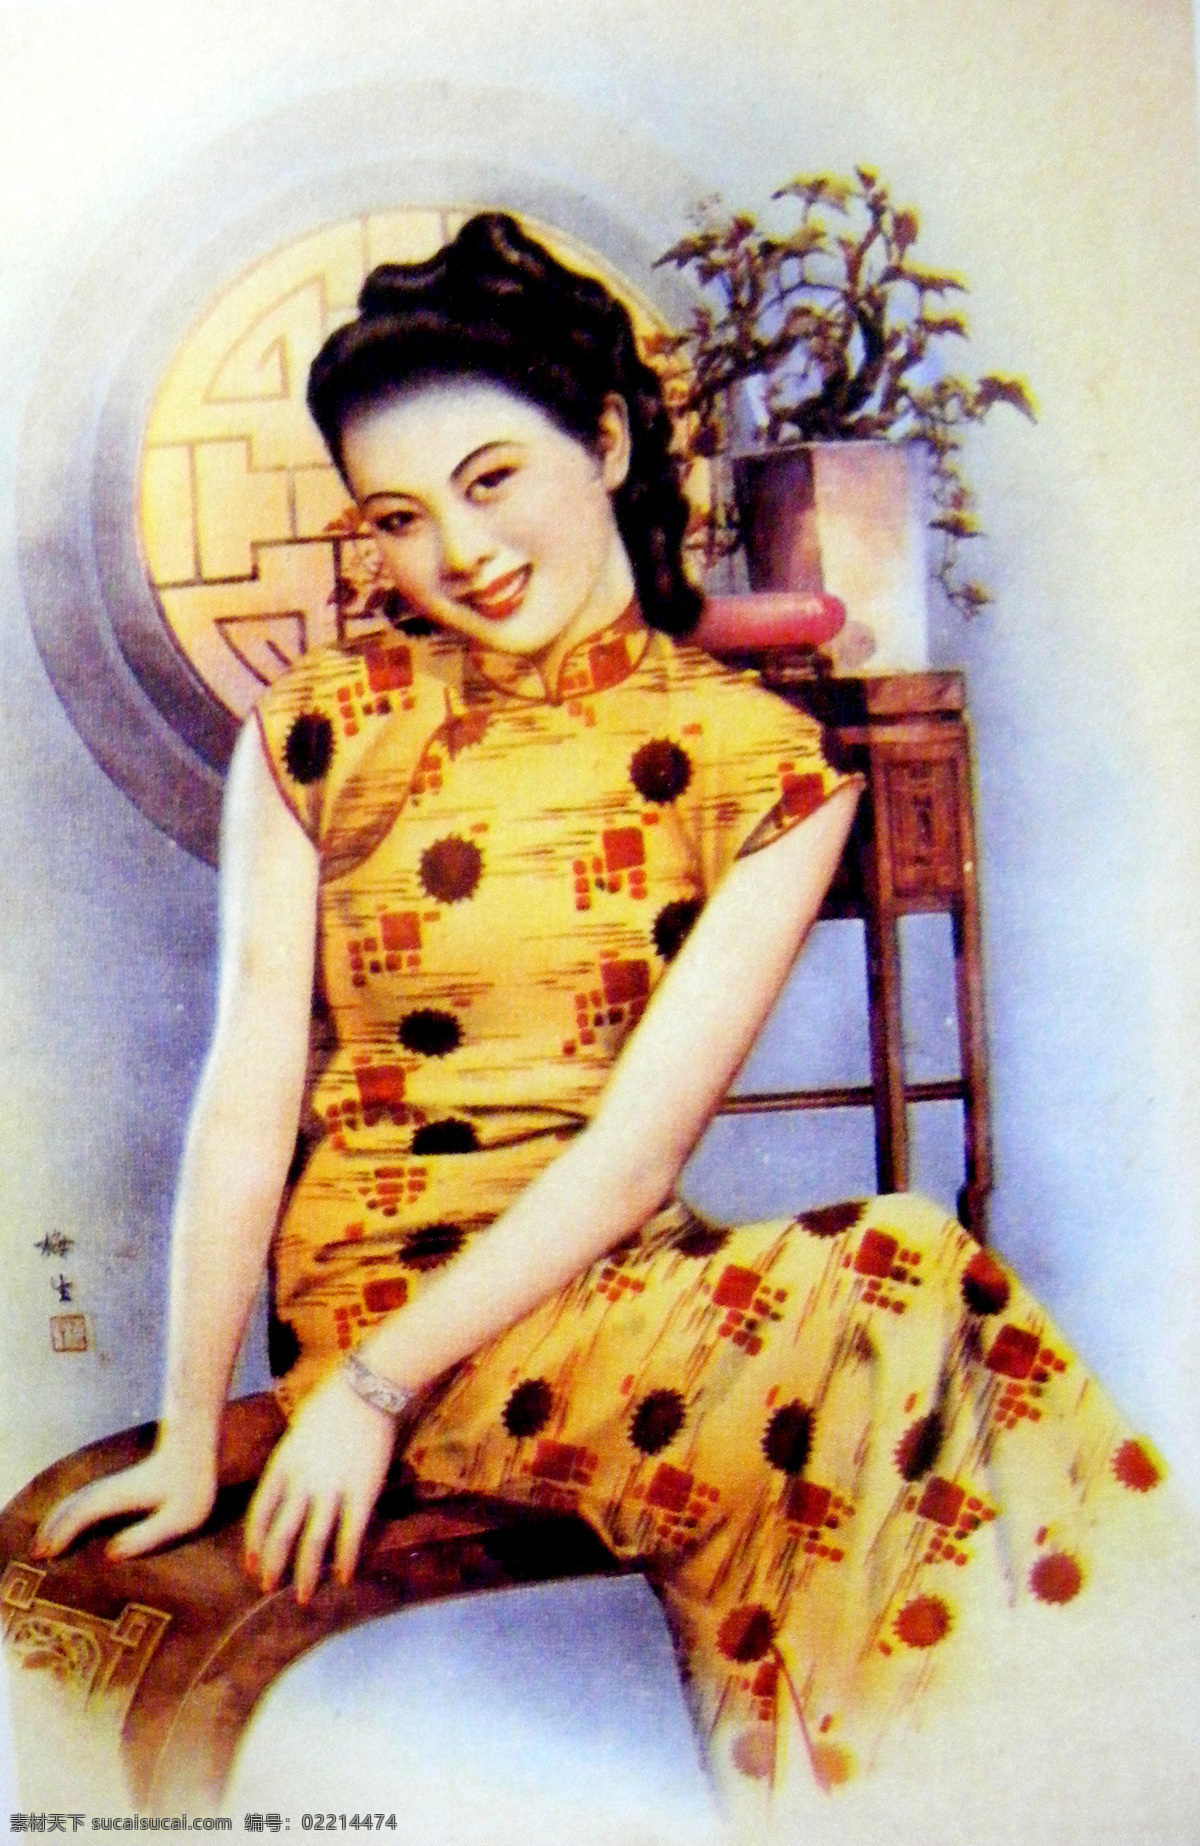 老上海月份牌 老上海 月份牌 美女 旗袍 旗袍美女 文化艺术 民国 传统文化 摄影图库